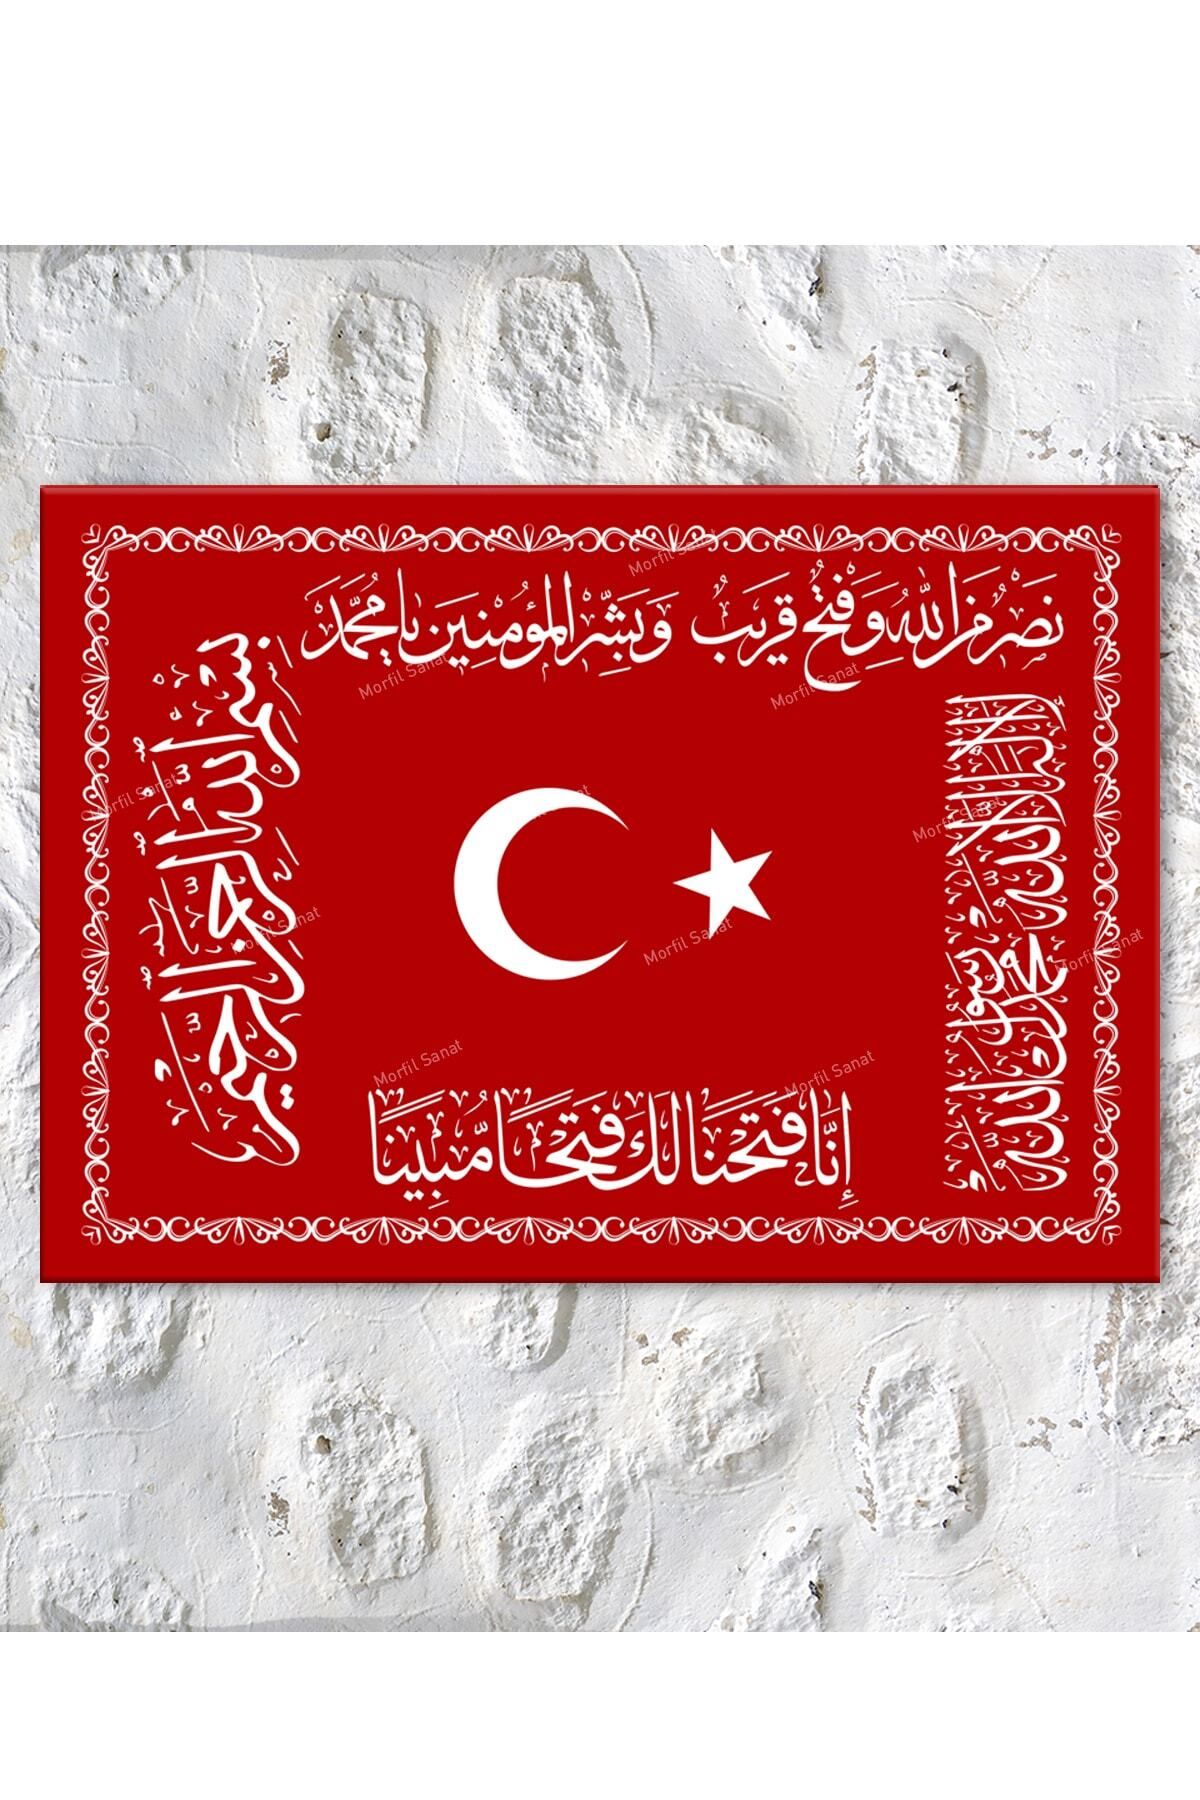 Hazeran Osmanlı Sancağı Dini Islami Kanvas Tablo (6 Farklı Ölçü)